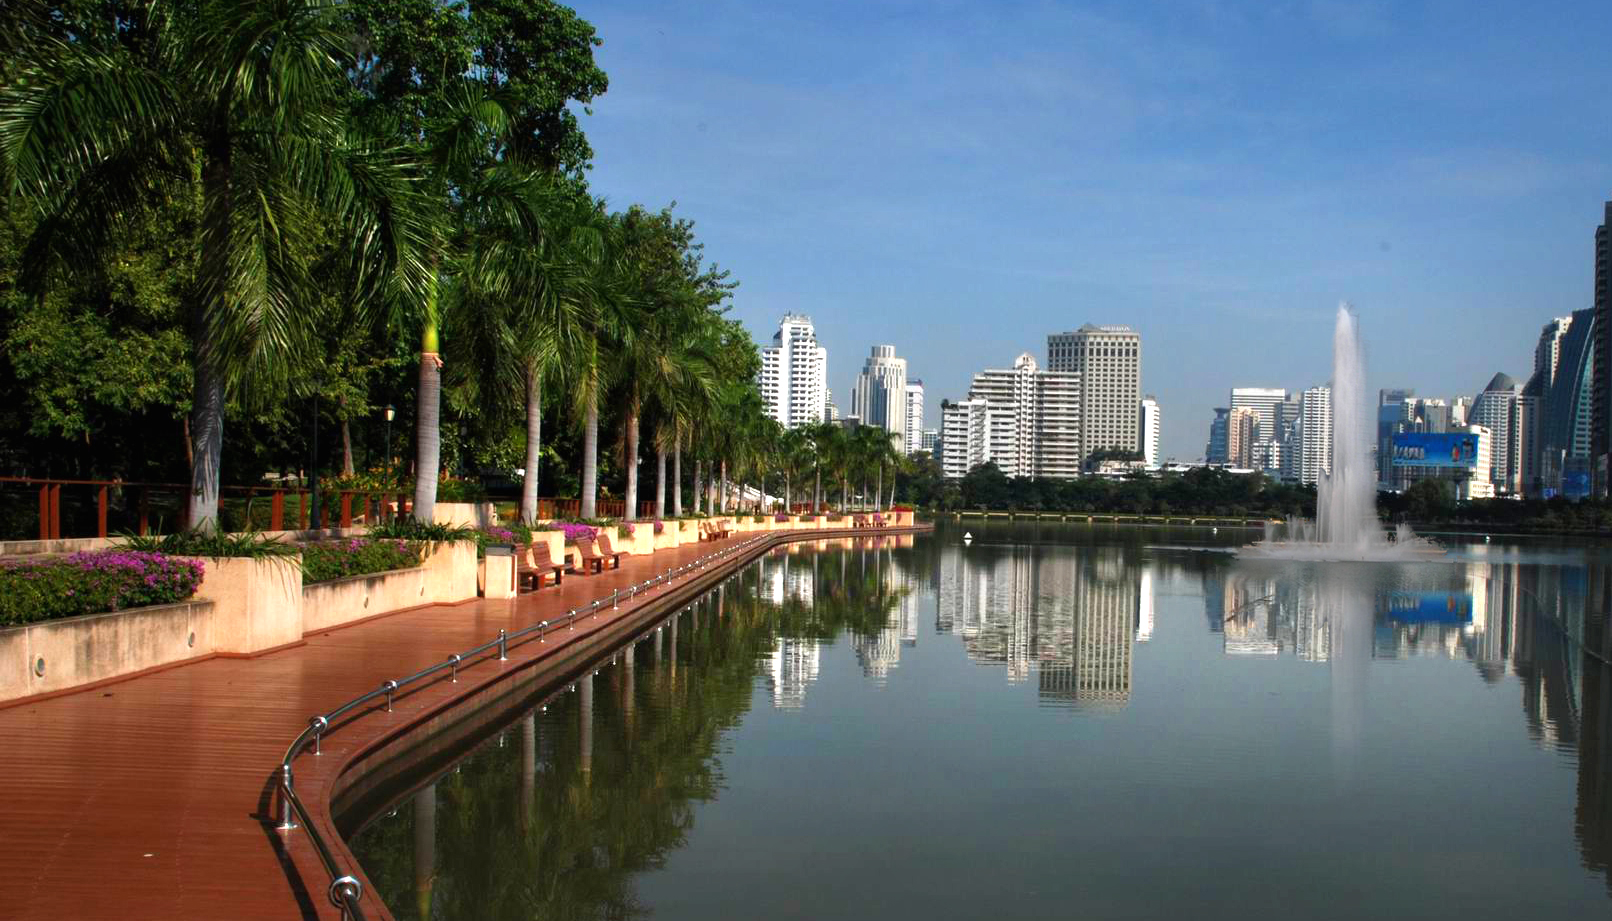 Люмпини бангкок. Бенджакити парк в Бангкоке. Парки Lumphini Бангкок. Парк Люмпини. Парк Люмпини / Lumpini Park.